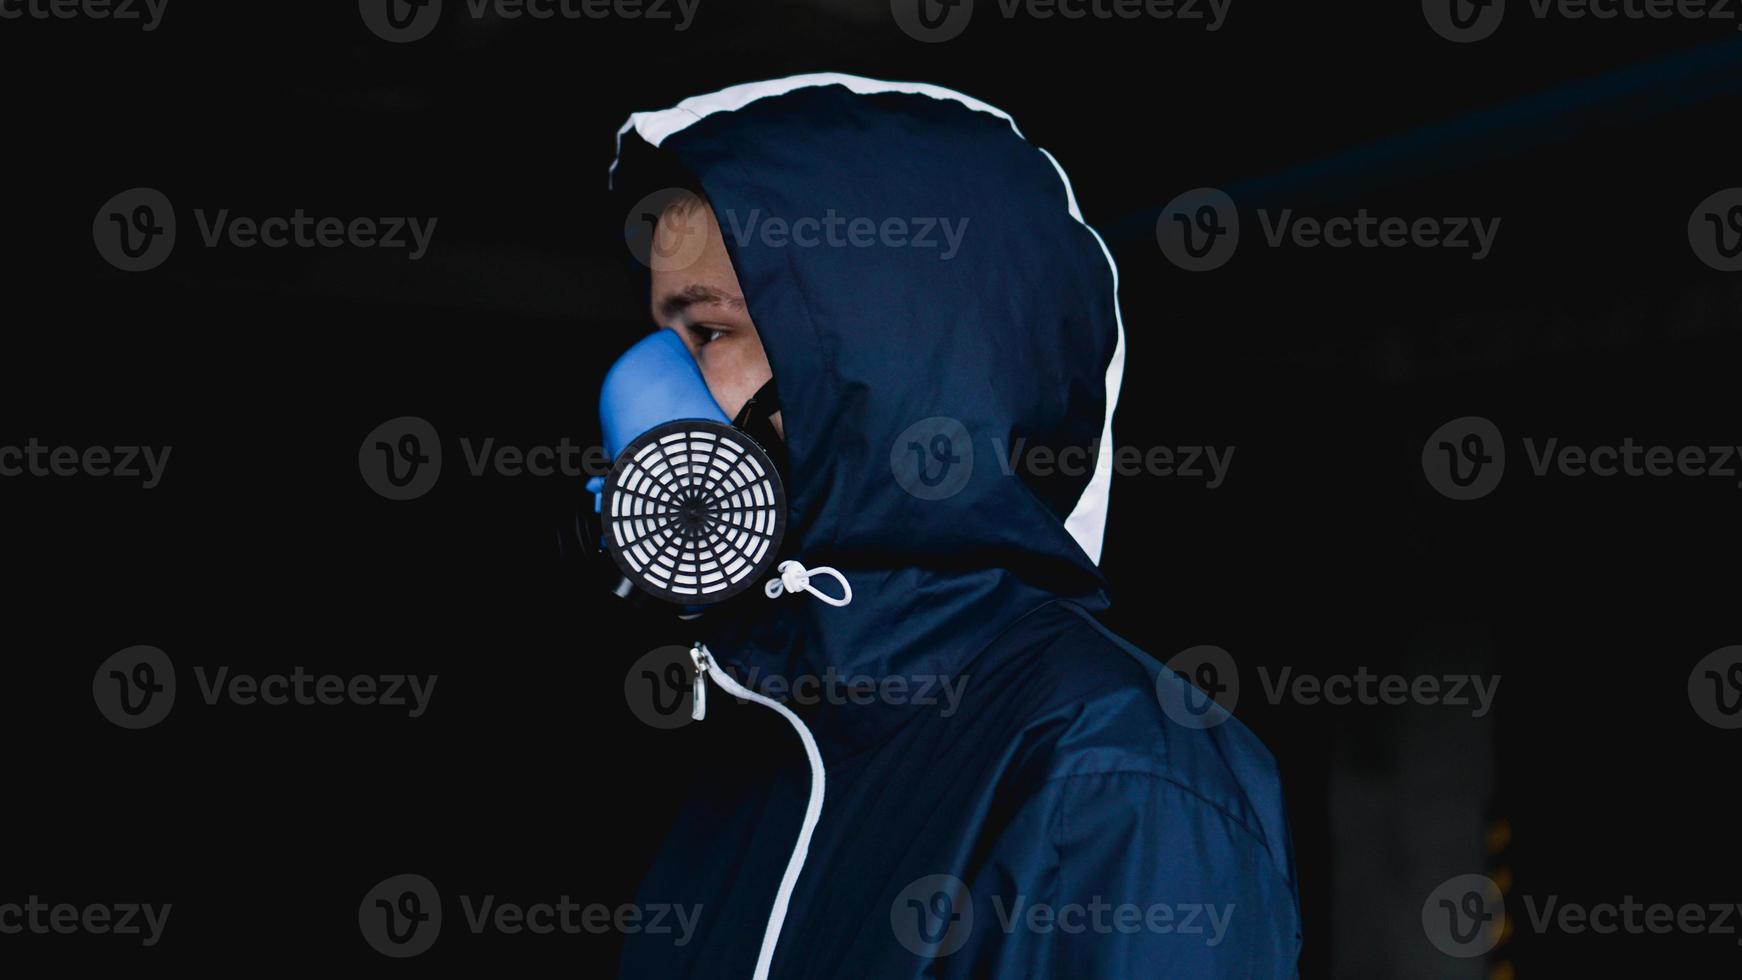 demi-masque respiratoire de protection contre les gaz toxiques photo